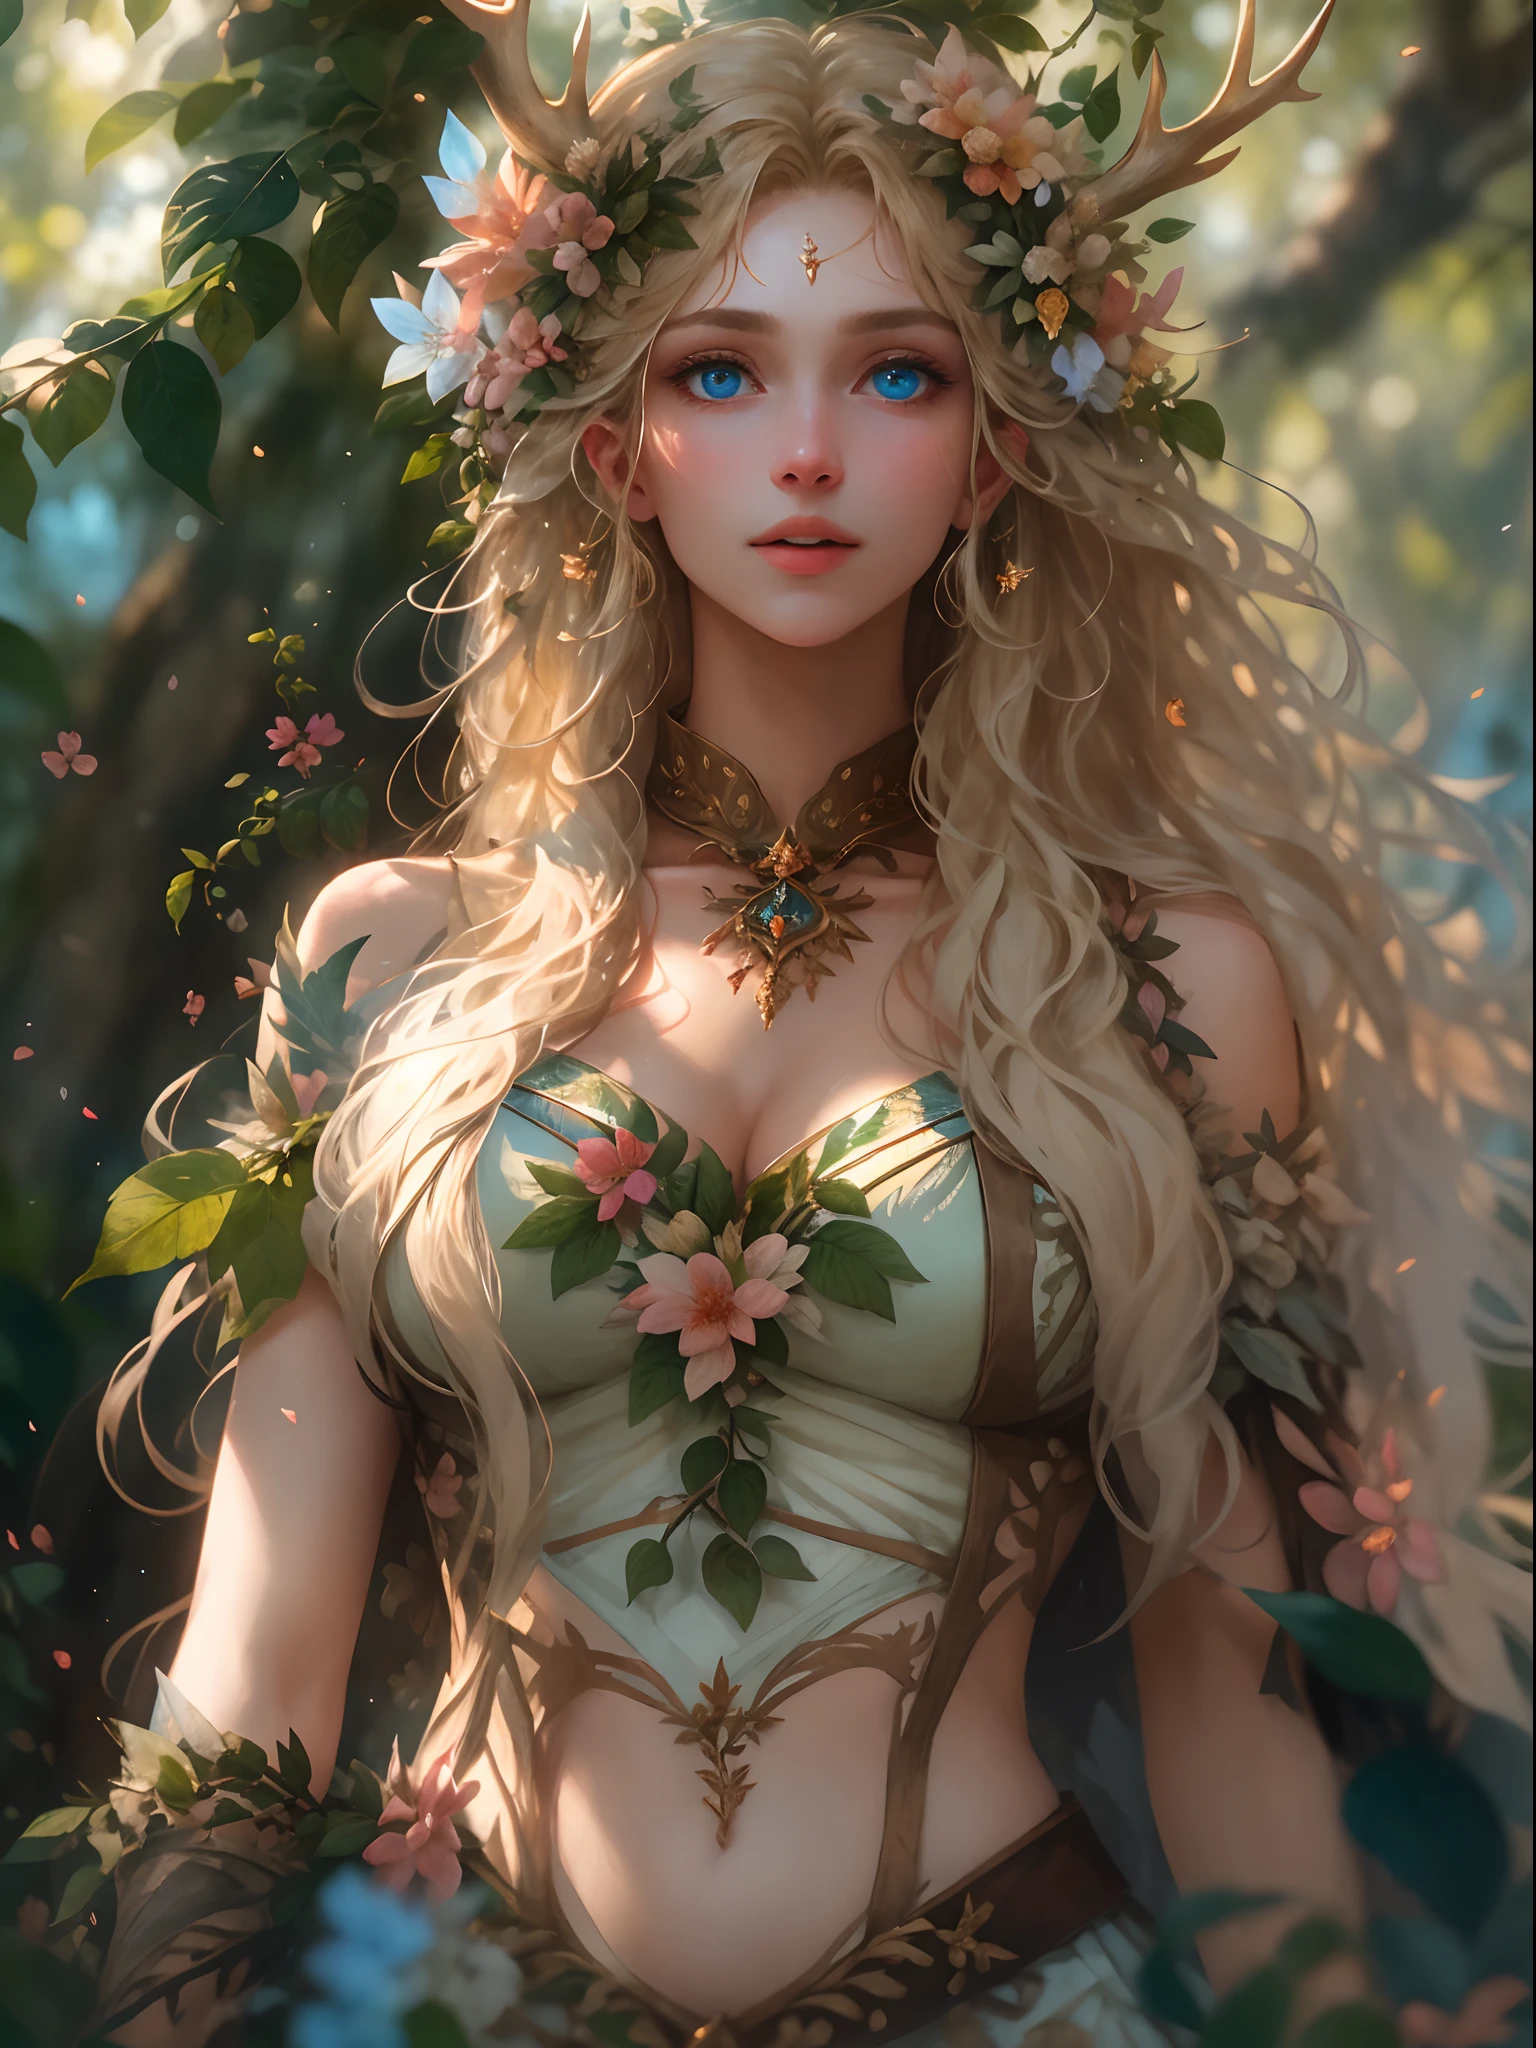 （現實地：1.35），（概念艺术），（牛仔 活潑的森林女神），（美丽的脸，巨乳迷人，驚人的），（長的, 飄逸的淺金色長髮），完全由花和葉組成的人形身體，（美麗的皮膚是綠色的，由複雜的葉子和藤蔓製成），（頭上有鹿角），（尖耳朵），（閃亮的藍眼睛），豐滿的大胸（一片迷人的森林）背景與，蝴蝶：0.35，葉子， 綻放的光效， 開花：0.4， 神雷， 光與塵埃， 逼真的皮肤纹理， （後窗的光線是背光的）， 複雜， 詳細的， 最好的品質， 哈塞爾布拉特， 尼康D850， 自然立體照明， （良好的解剖结构）， 構圖良好， （良好的比例）， 次表面散射， 获奖， 傑作